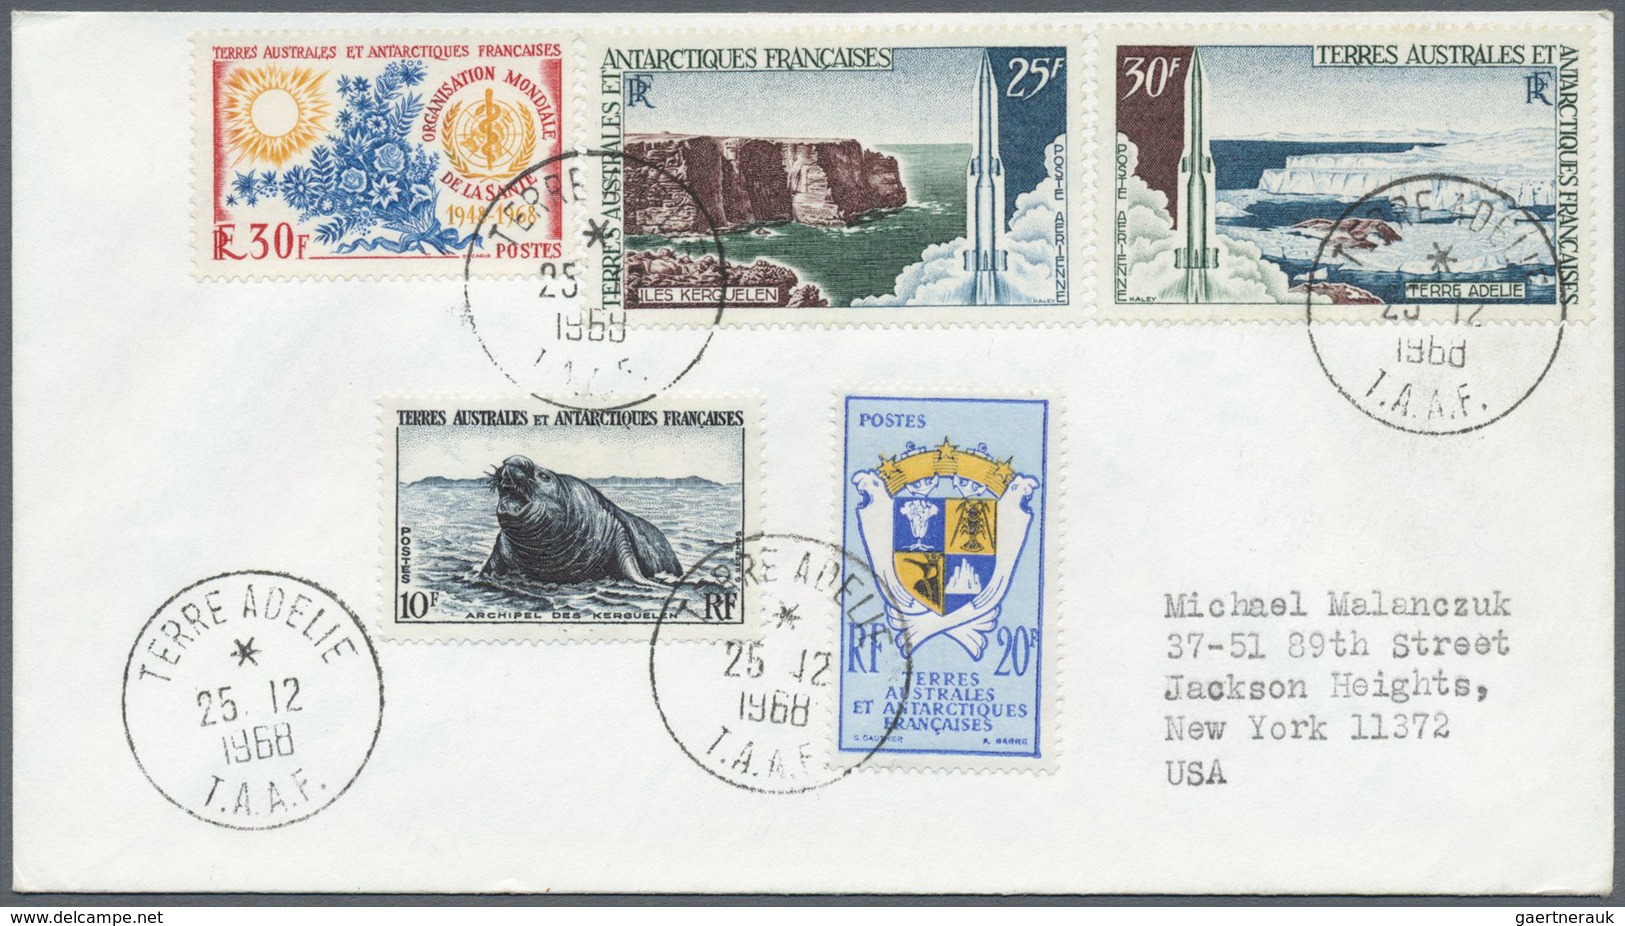 Br/ Französische Gebiete in der Antarktis: 1958/1995, accumulation of apprx. 158 covers/f.d.c. with attr